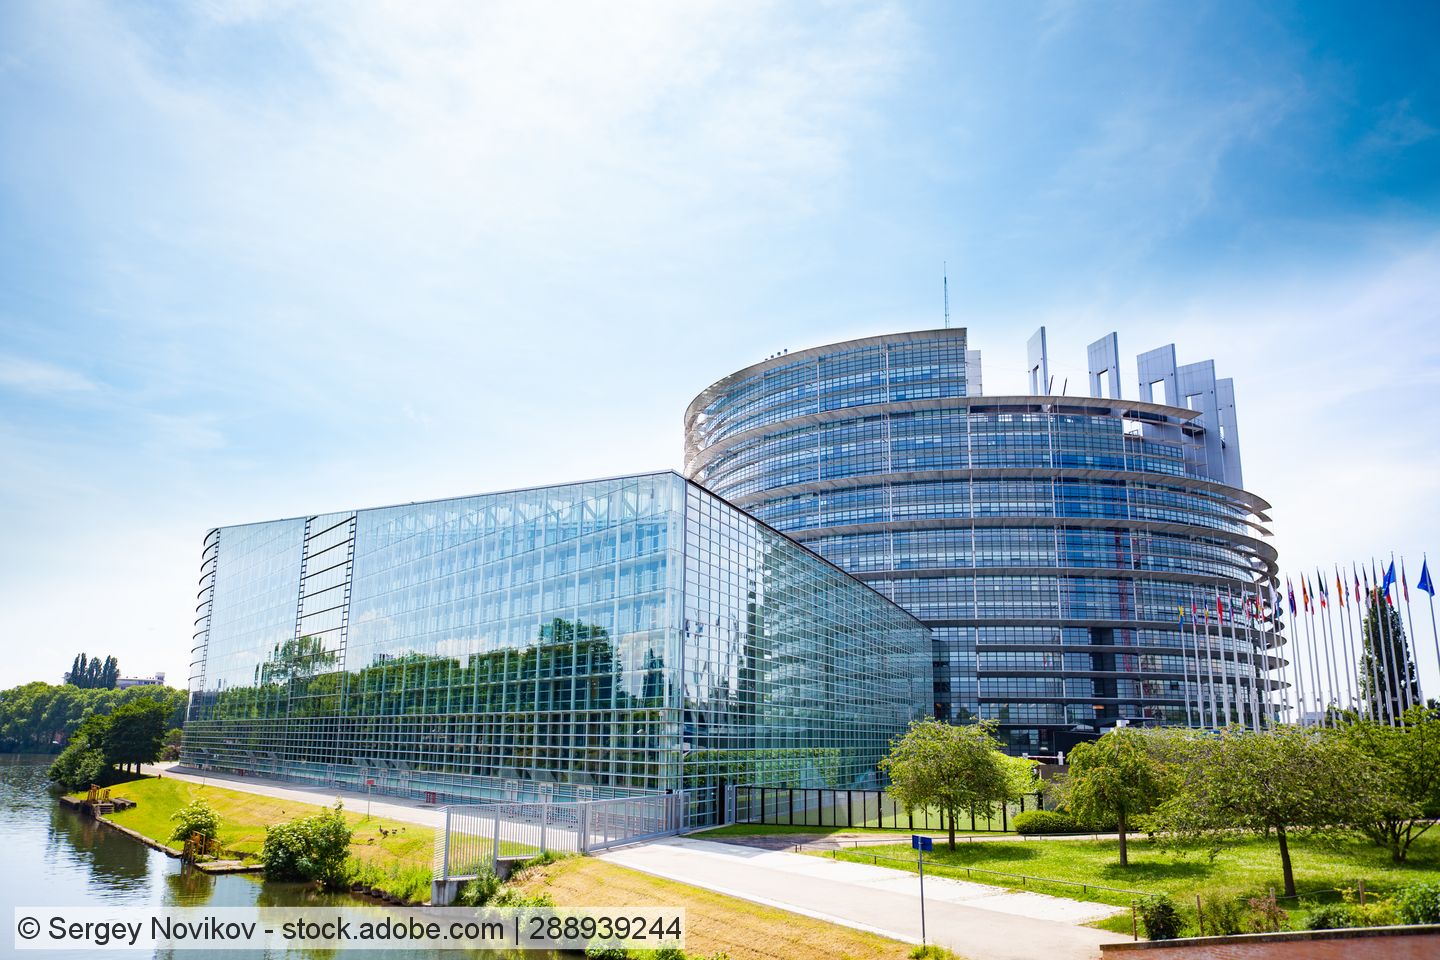 Umweltausschuss im EU-Parlament für Ausweitung von Mindestrezyklatquoten auf weitere Produkte